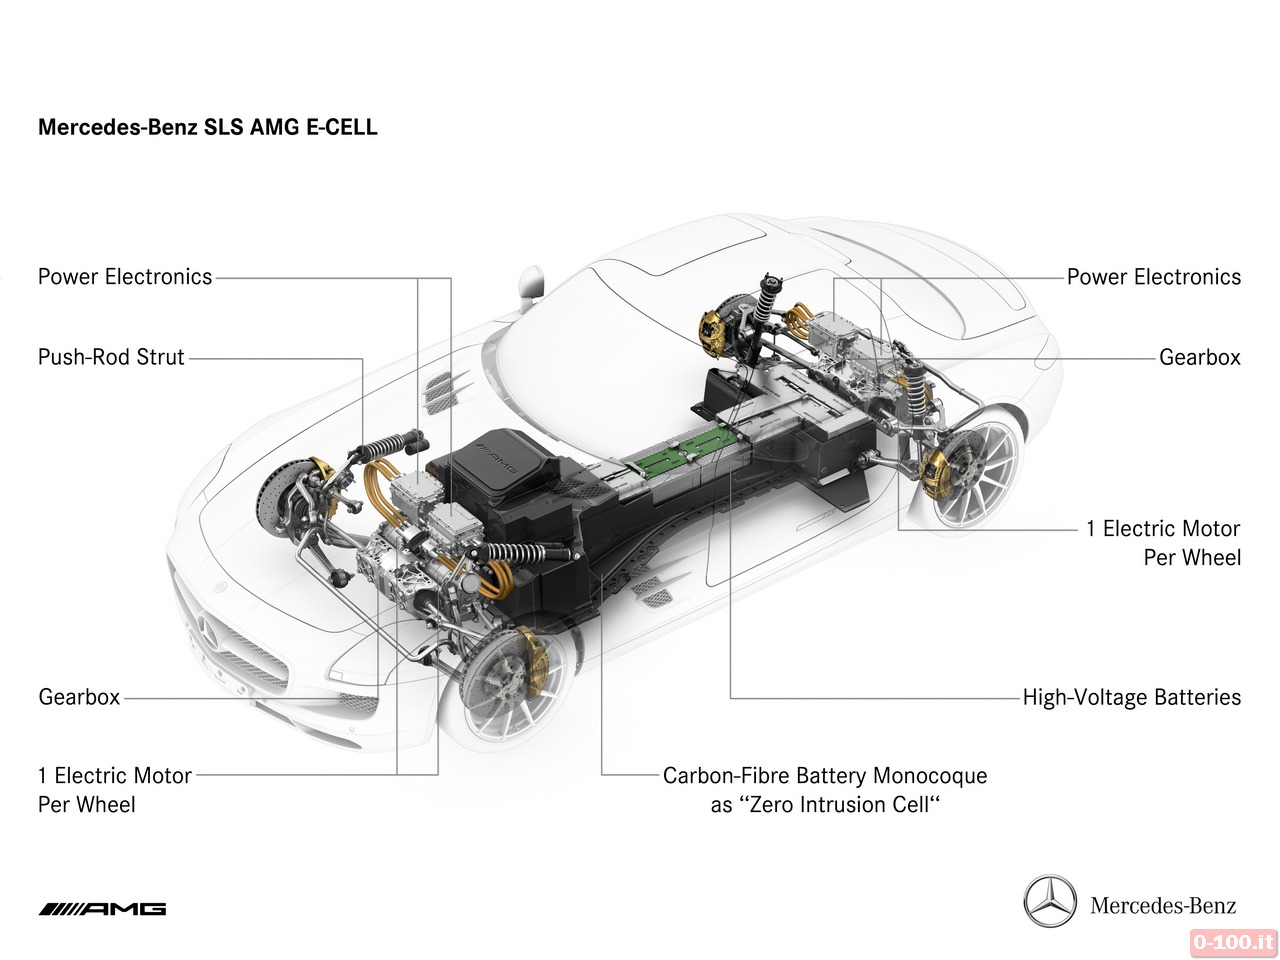 Mercedes-Benz SLS AMG Electric Drive - 0-100.it